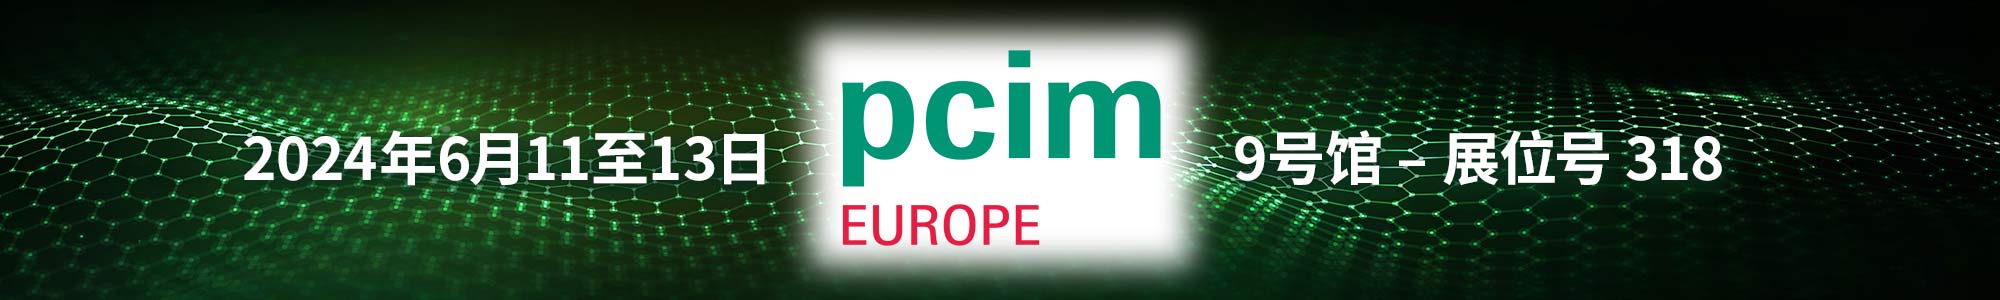 EPC at PCIM Europe 2024